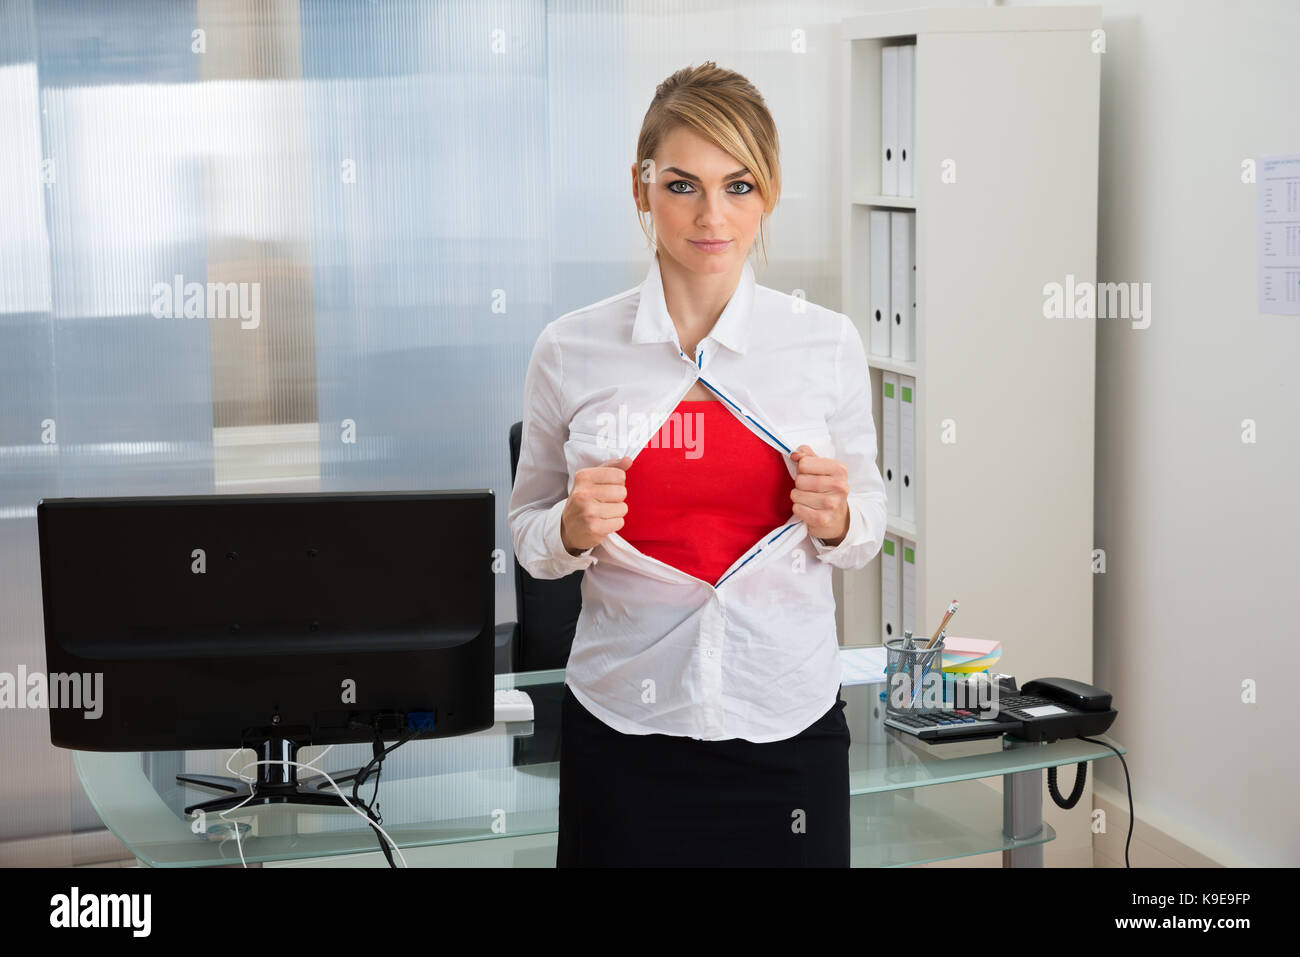 Porträt der jungen Geschäftsfrau reißt ihr Shirt offenbart ein Superheld Anzug Stockfoto